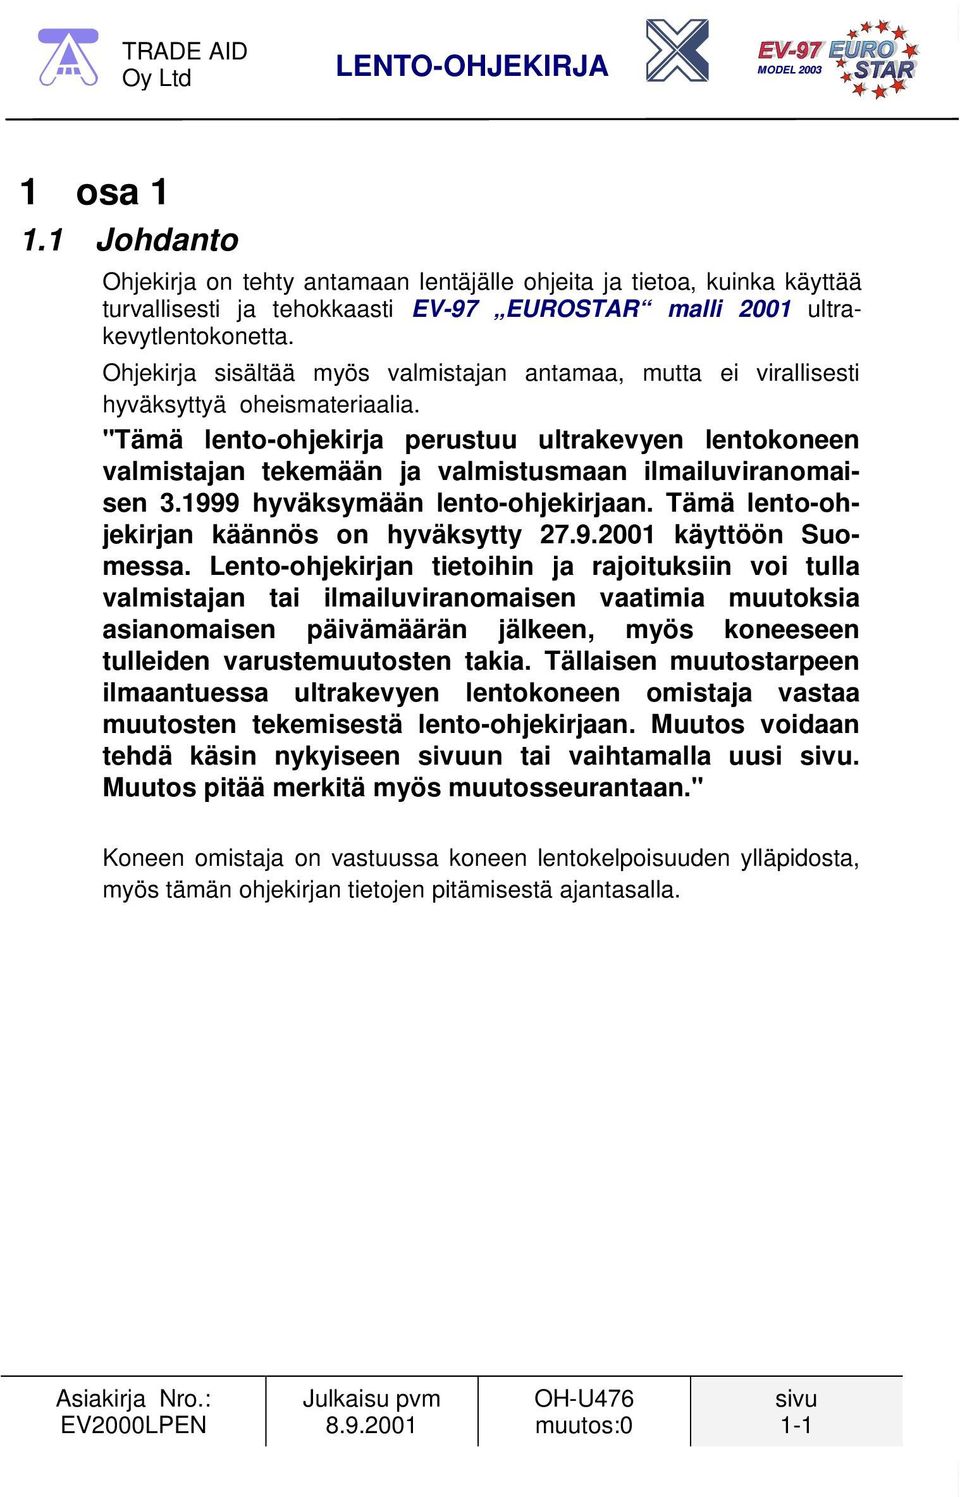 "Tämä lento-ohjekirja perustuu ultrakevyen lentokoneen valmistajan tekemään ja valmistusmaan ilmailuviranomaisen 3.1999 hyväksymään lento-ohjekirjaan. Tämä lento-ohjekirjan käännös on hyväksytty 27.9.2001 käyttöön Suomessa.